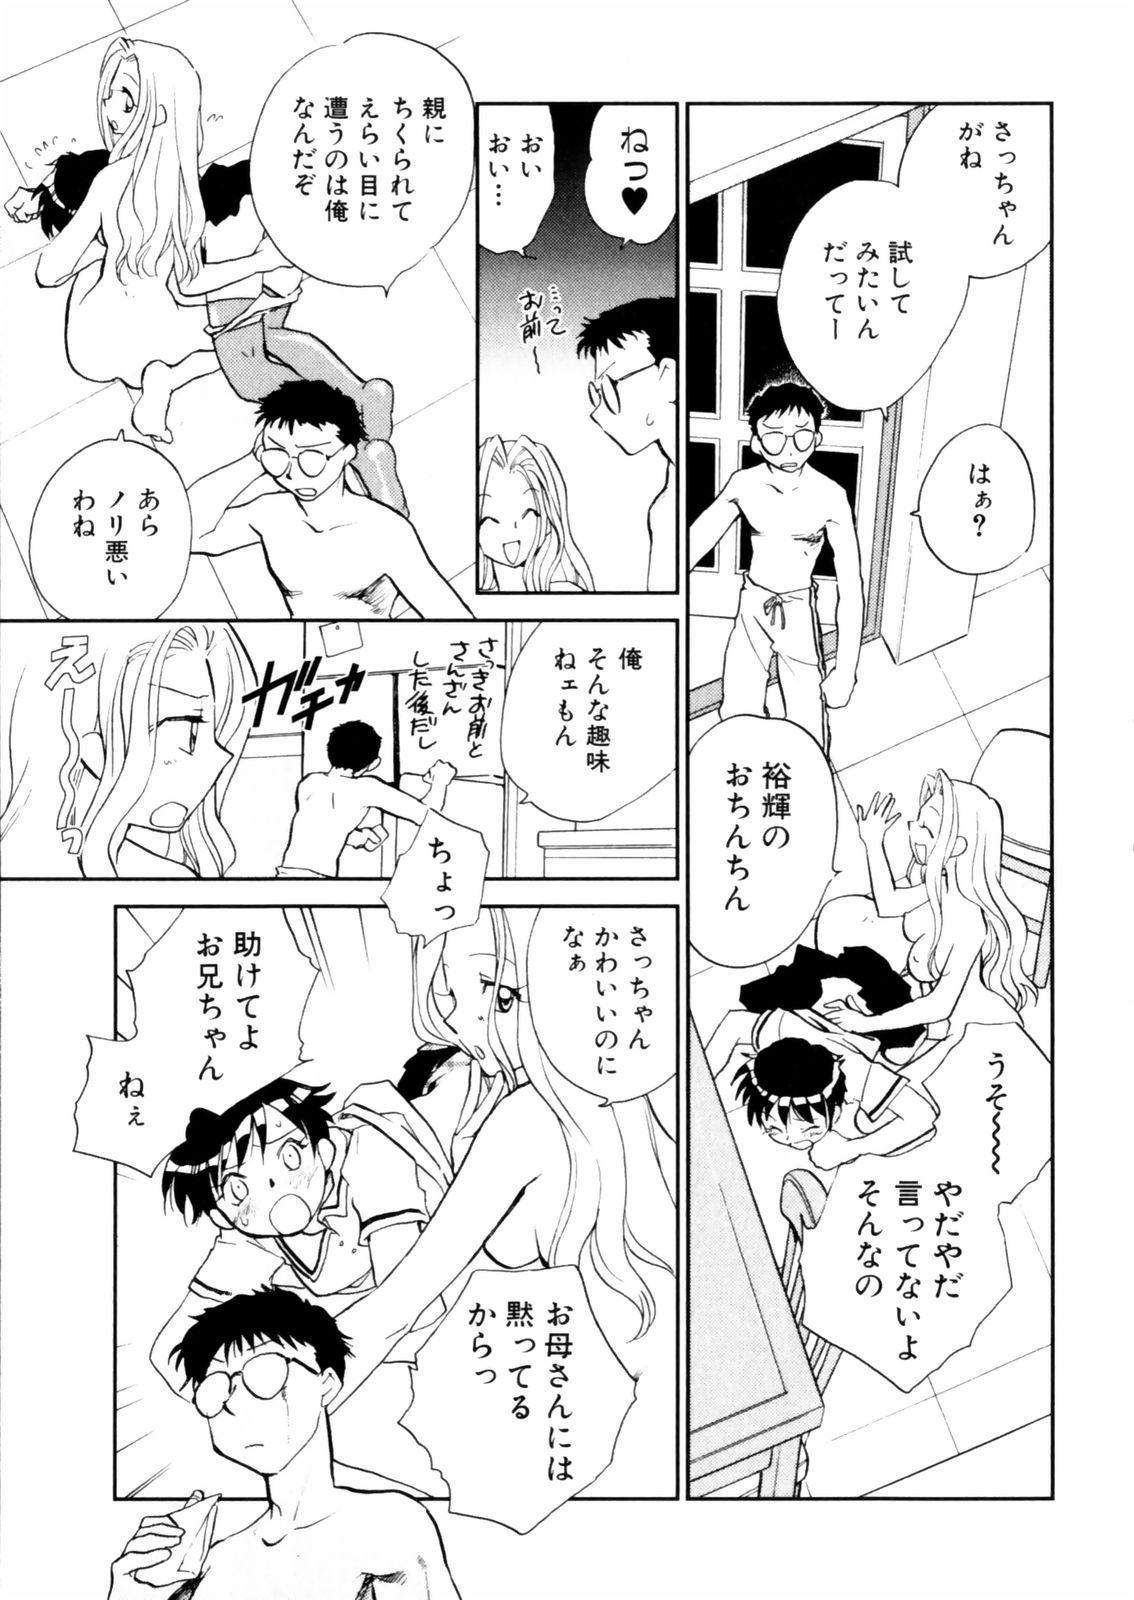 [Okano Ahiru] Hanasake ! Otome Juku (Otome Private Tutoring School) Vol.2 148